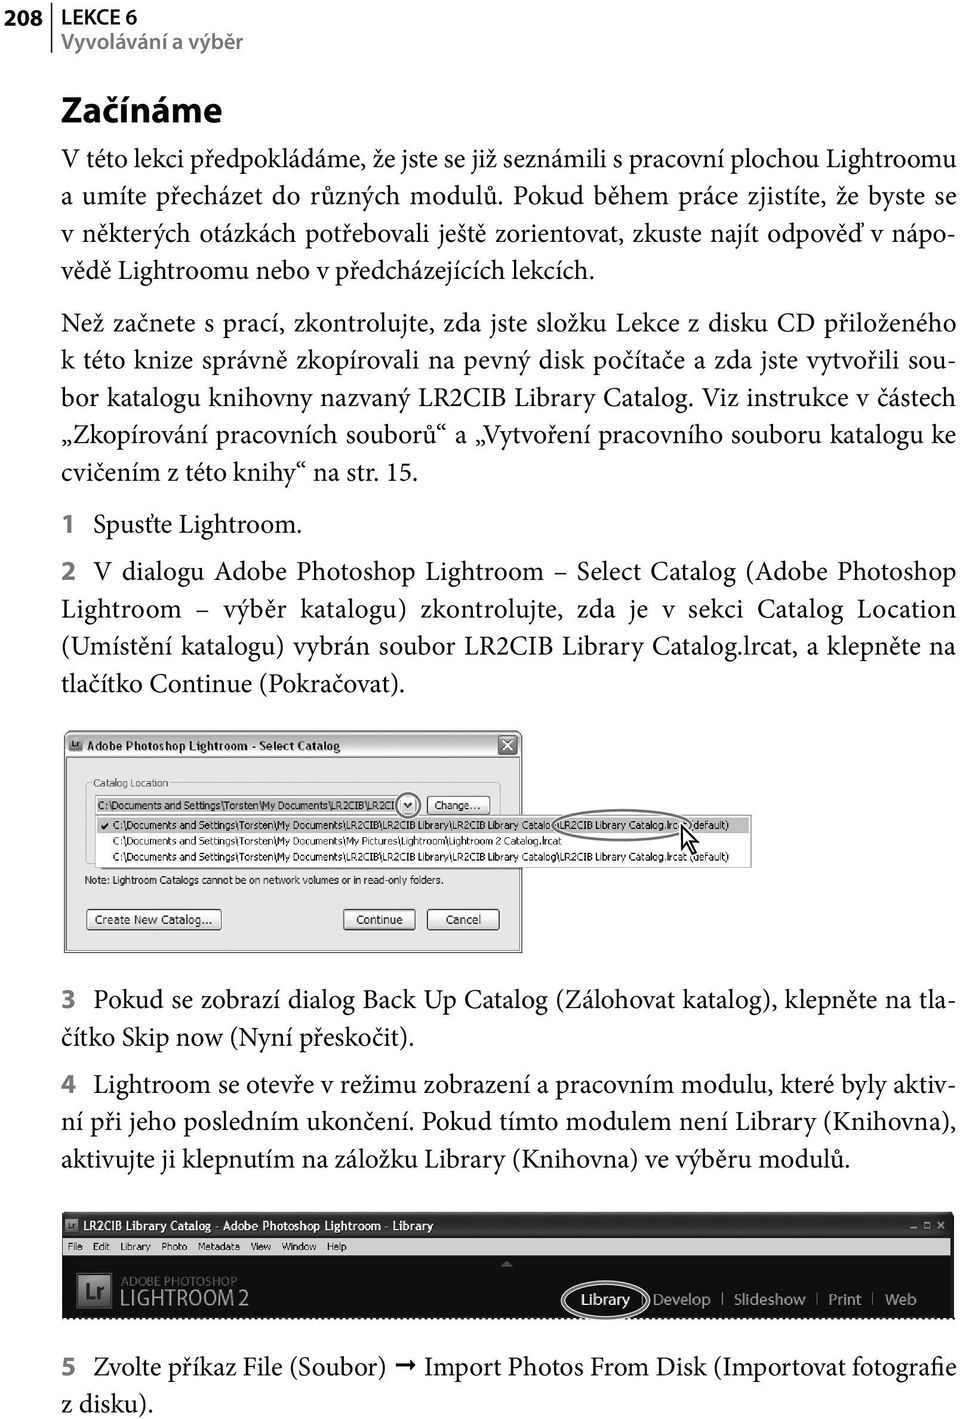 Než začnete s prací, zkontrolujte, zda jste složku Lekce z disku CD přiloženého k této knize správně zkopírovali na pevný disk počítače a zda jste vytvořili soubor katalogu knihovny nazvaný LR2CIB